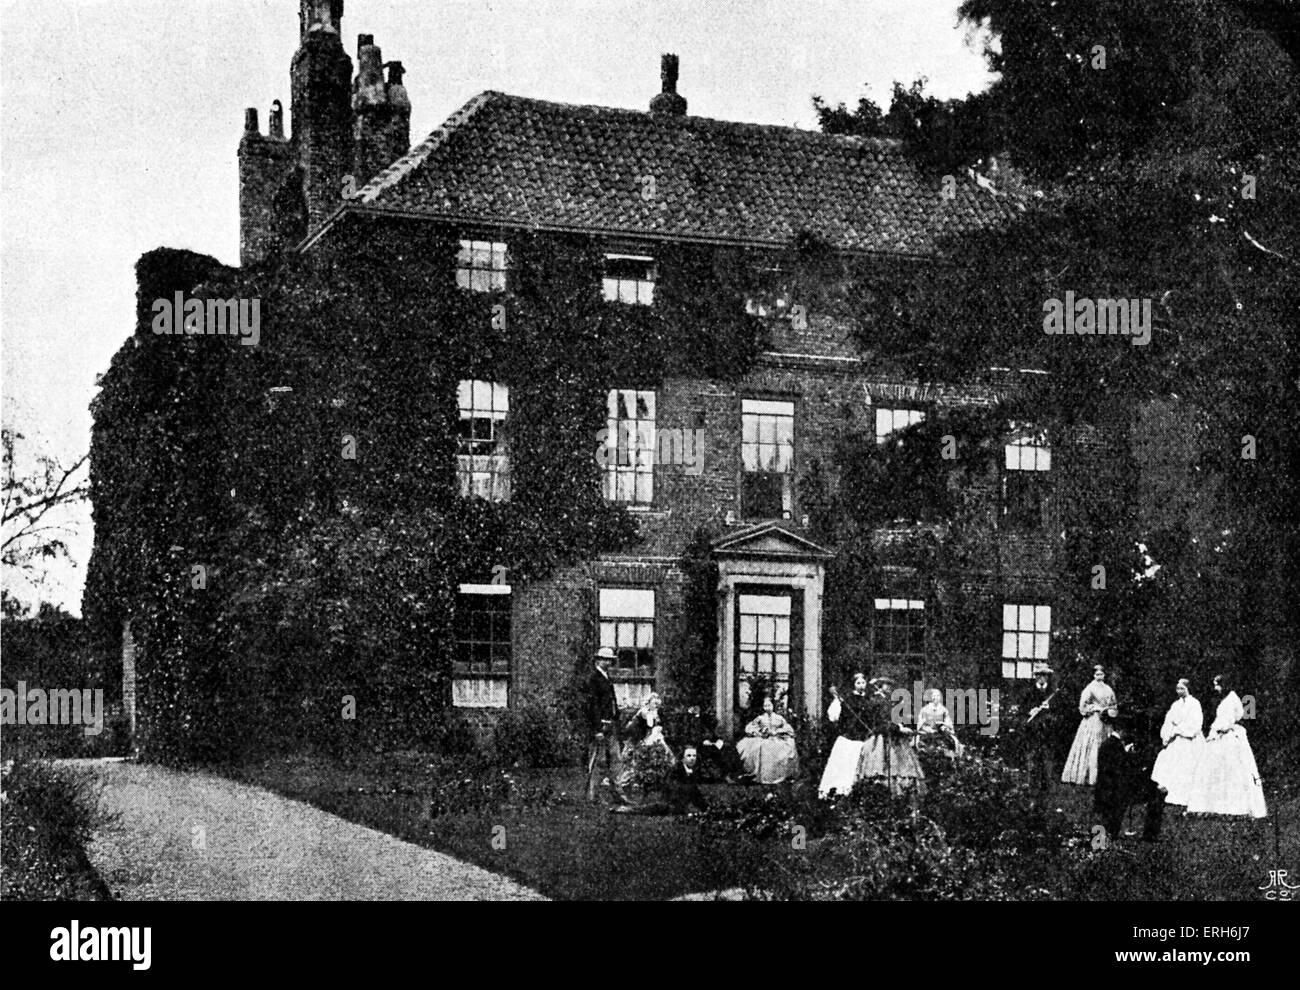 Croft rectoría - Lewis Carroll 's casa infancia desde 1843, cuando su padre se convirtió en ministro parroquial Anglicana de croft-- tes, Foto de stock